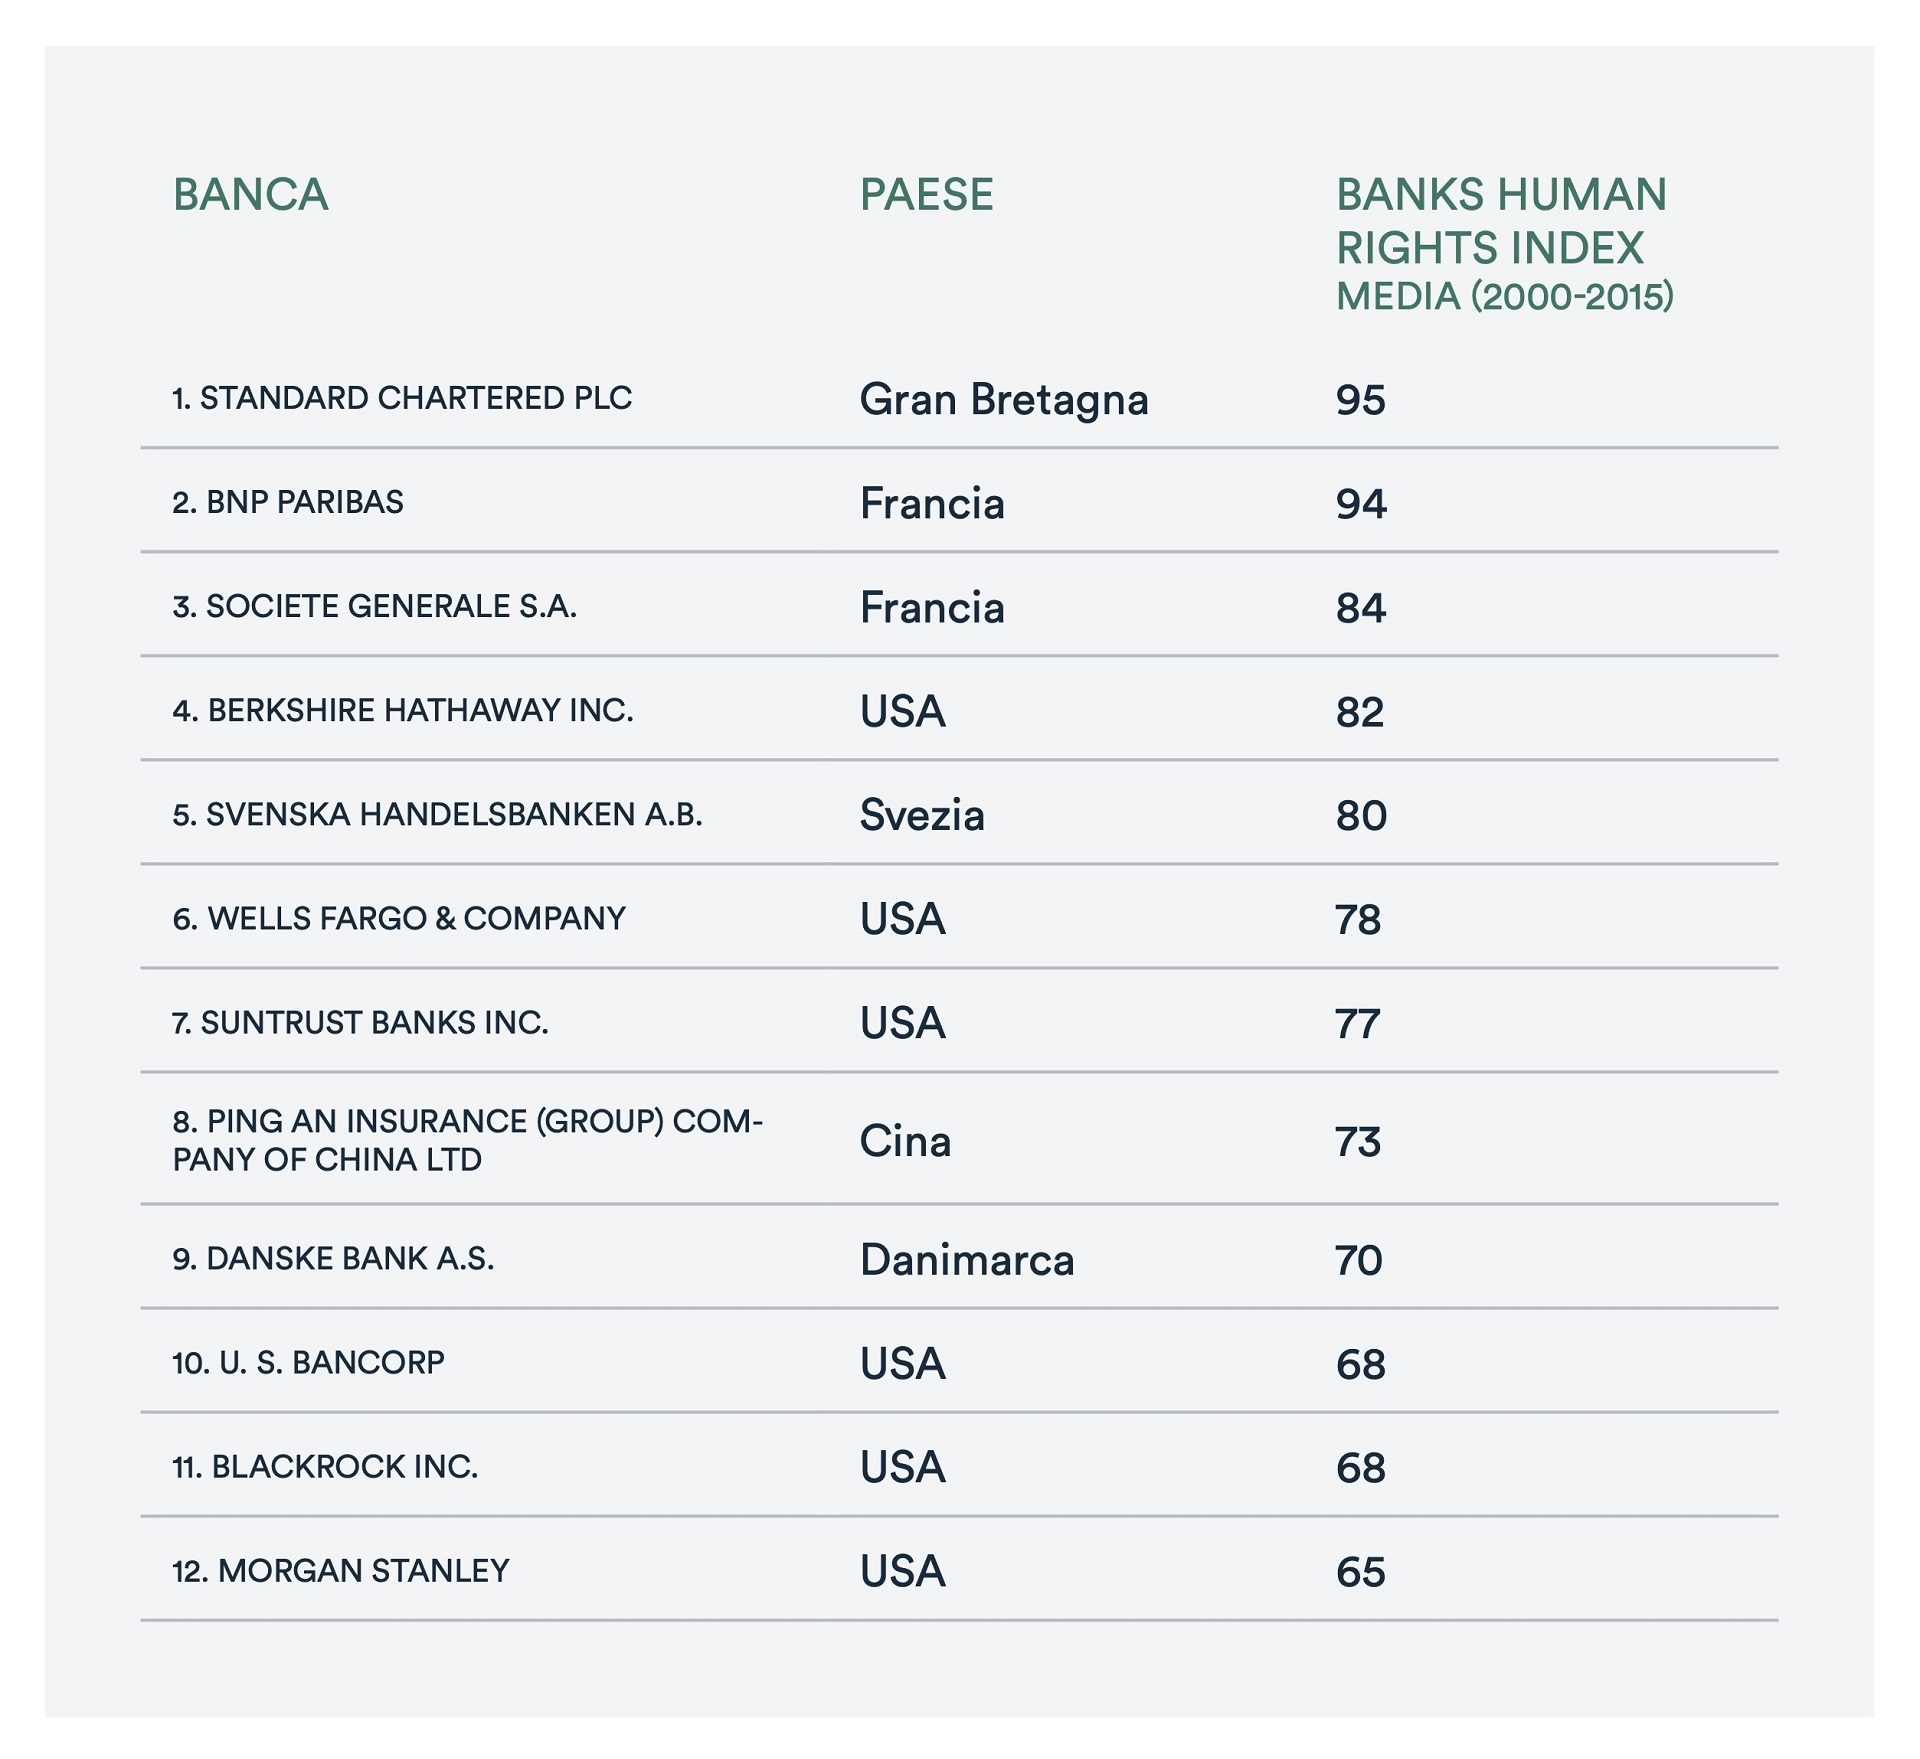 Le dieci banche (a livello globale) più esposte a violazioni di diritti umani secondo il Banks human rights index